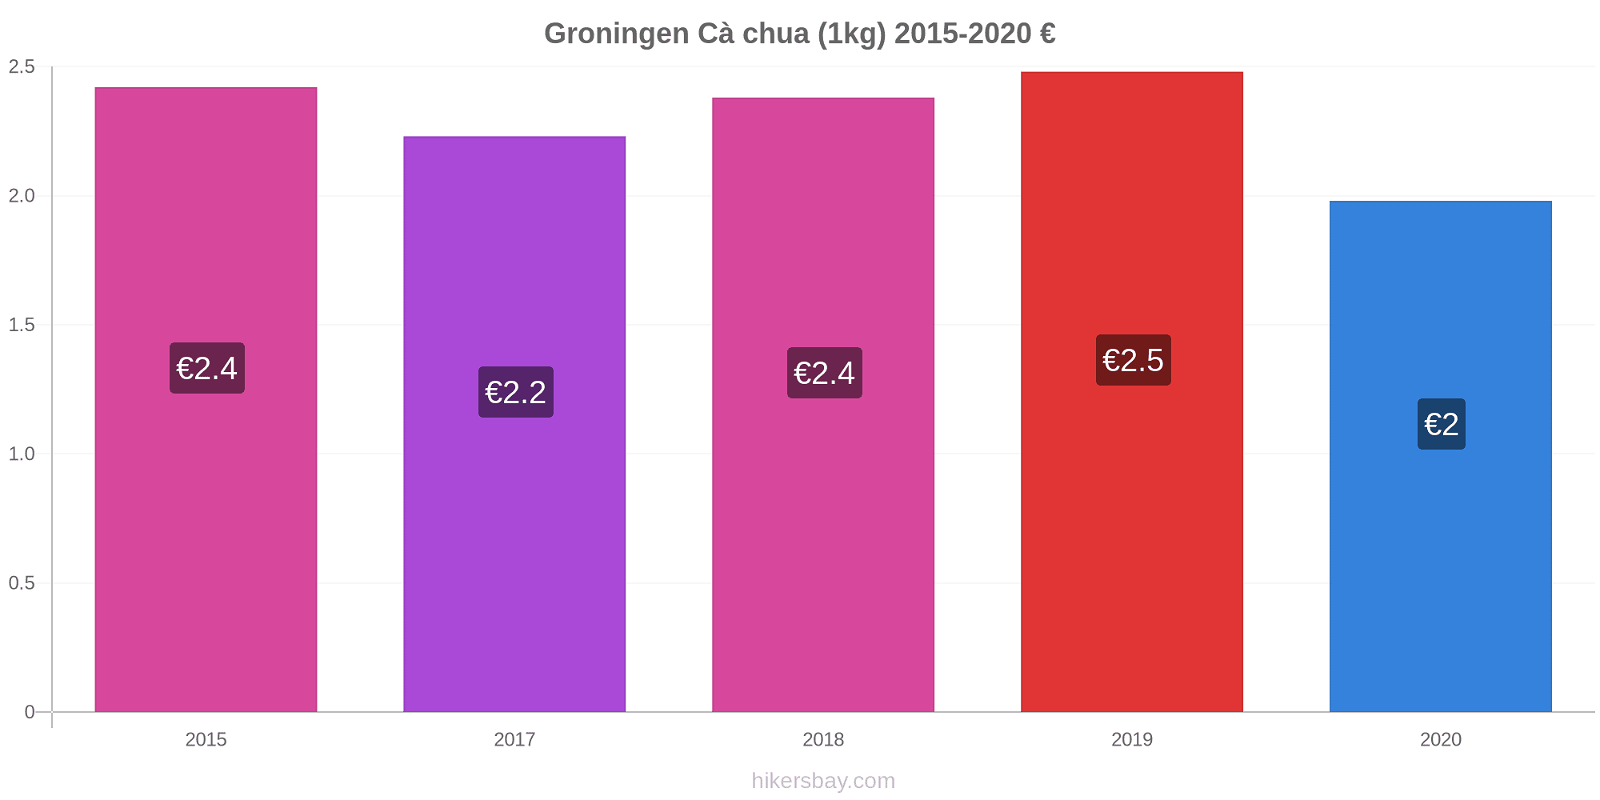 Groningen thay đổi giá Cà chua (1kg) hikersbay.com